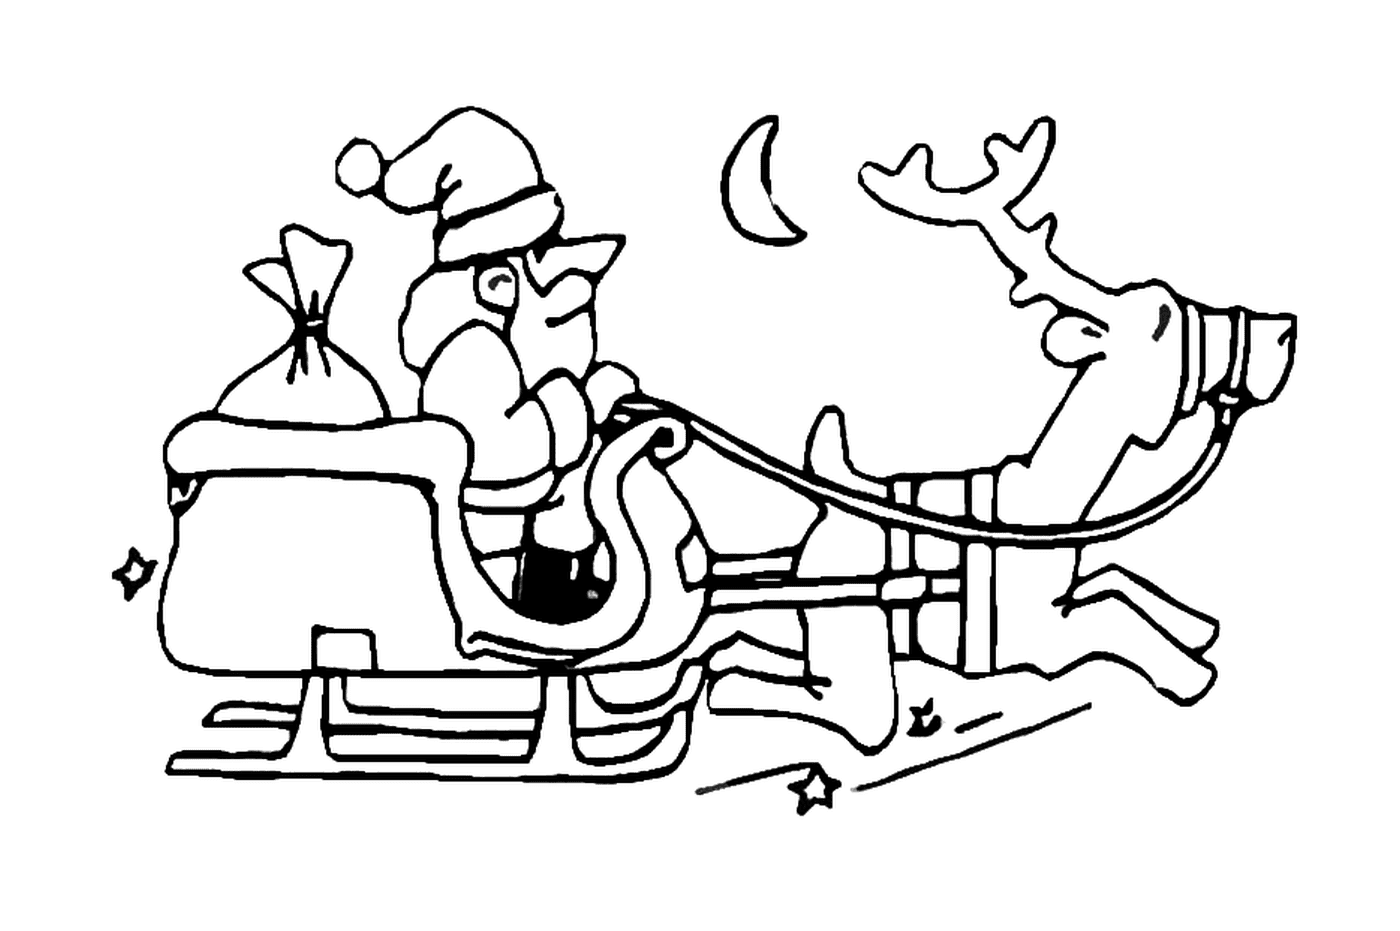  Santa con su trineo 